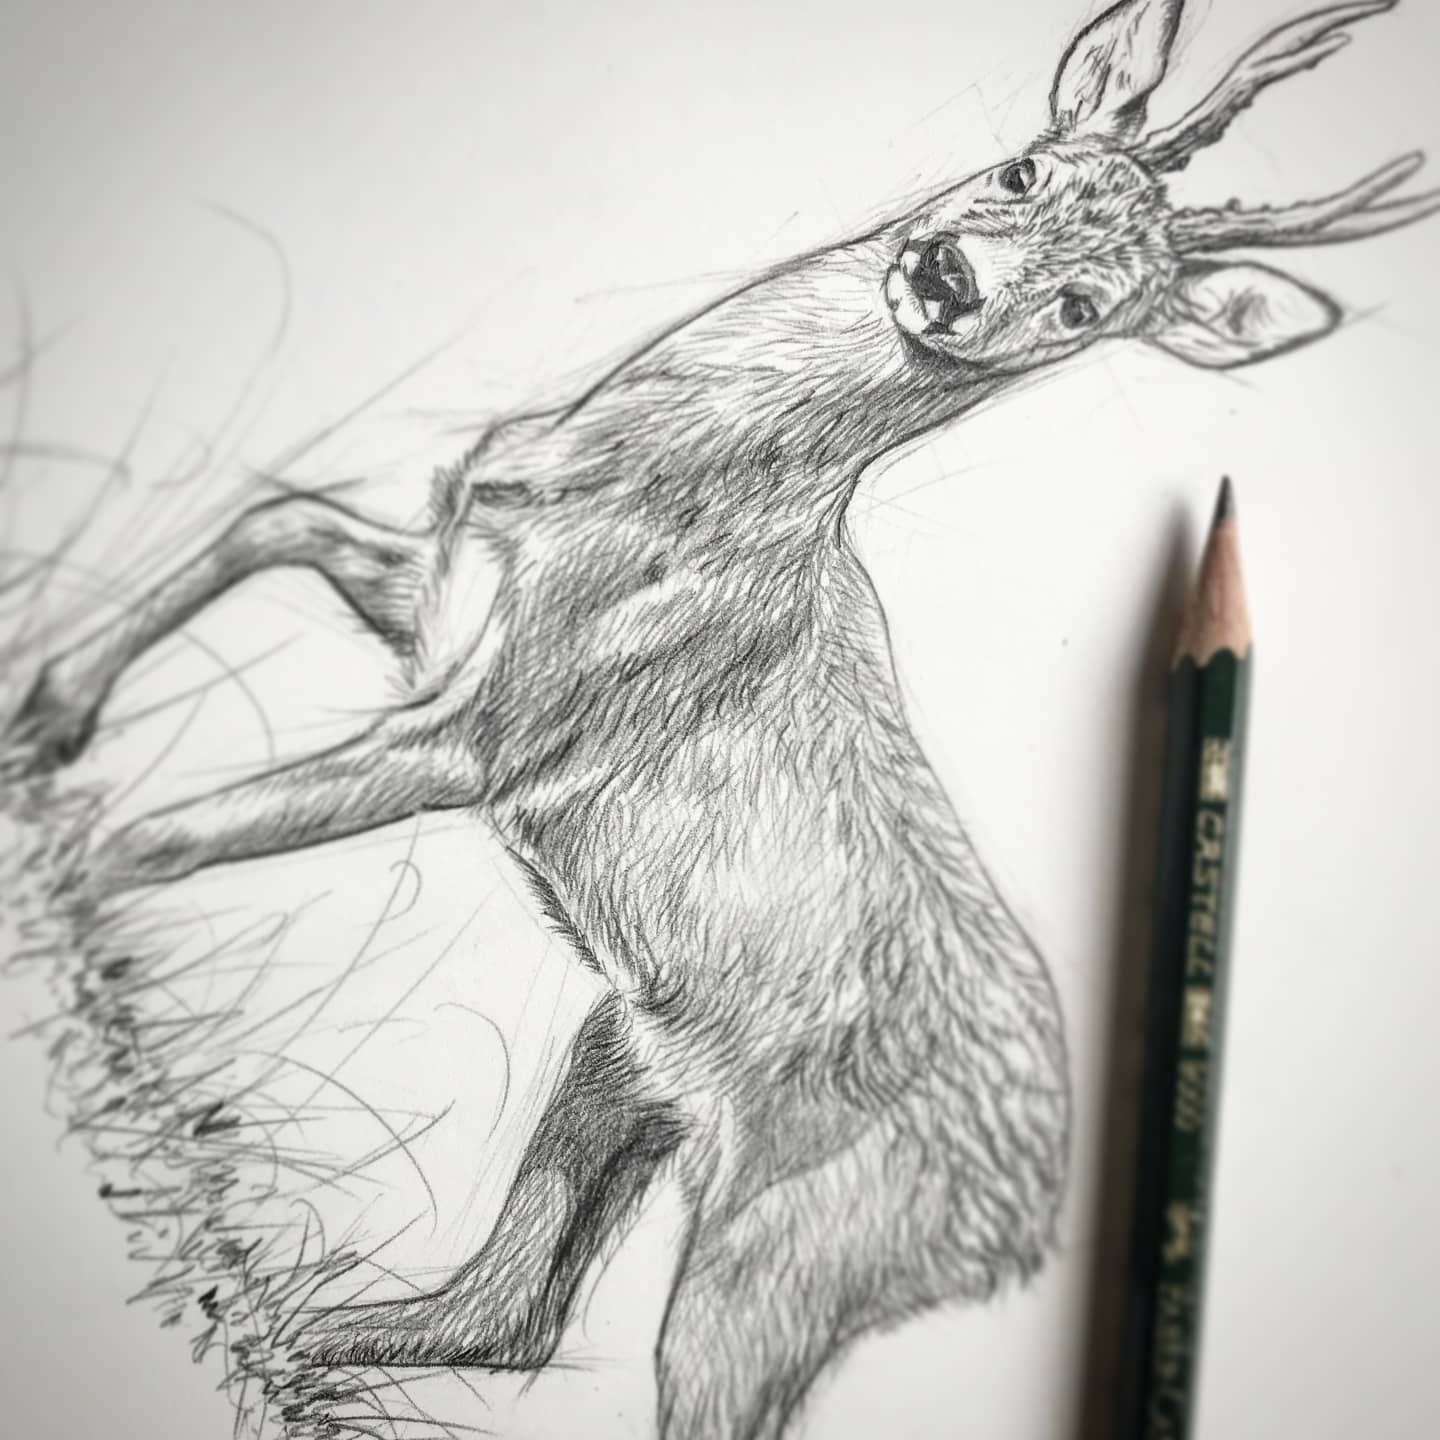 Roe deer Sketch - commission #roedeer #wildlifeart #wildlife